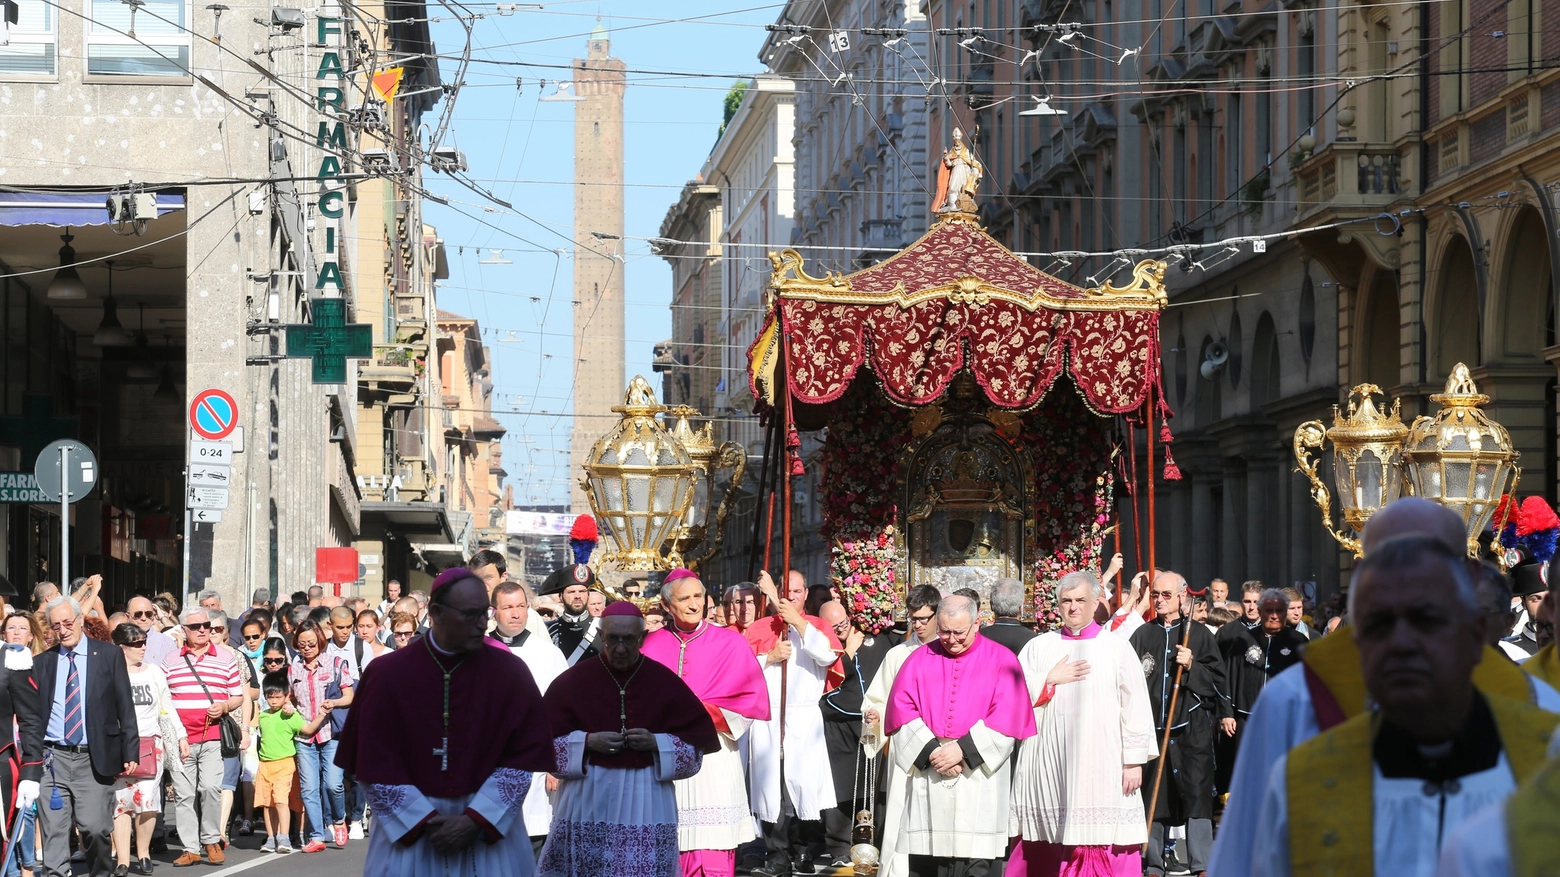 La processione che accompagna la Madonna a San Luca (Schicchi)